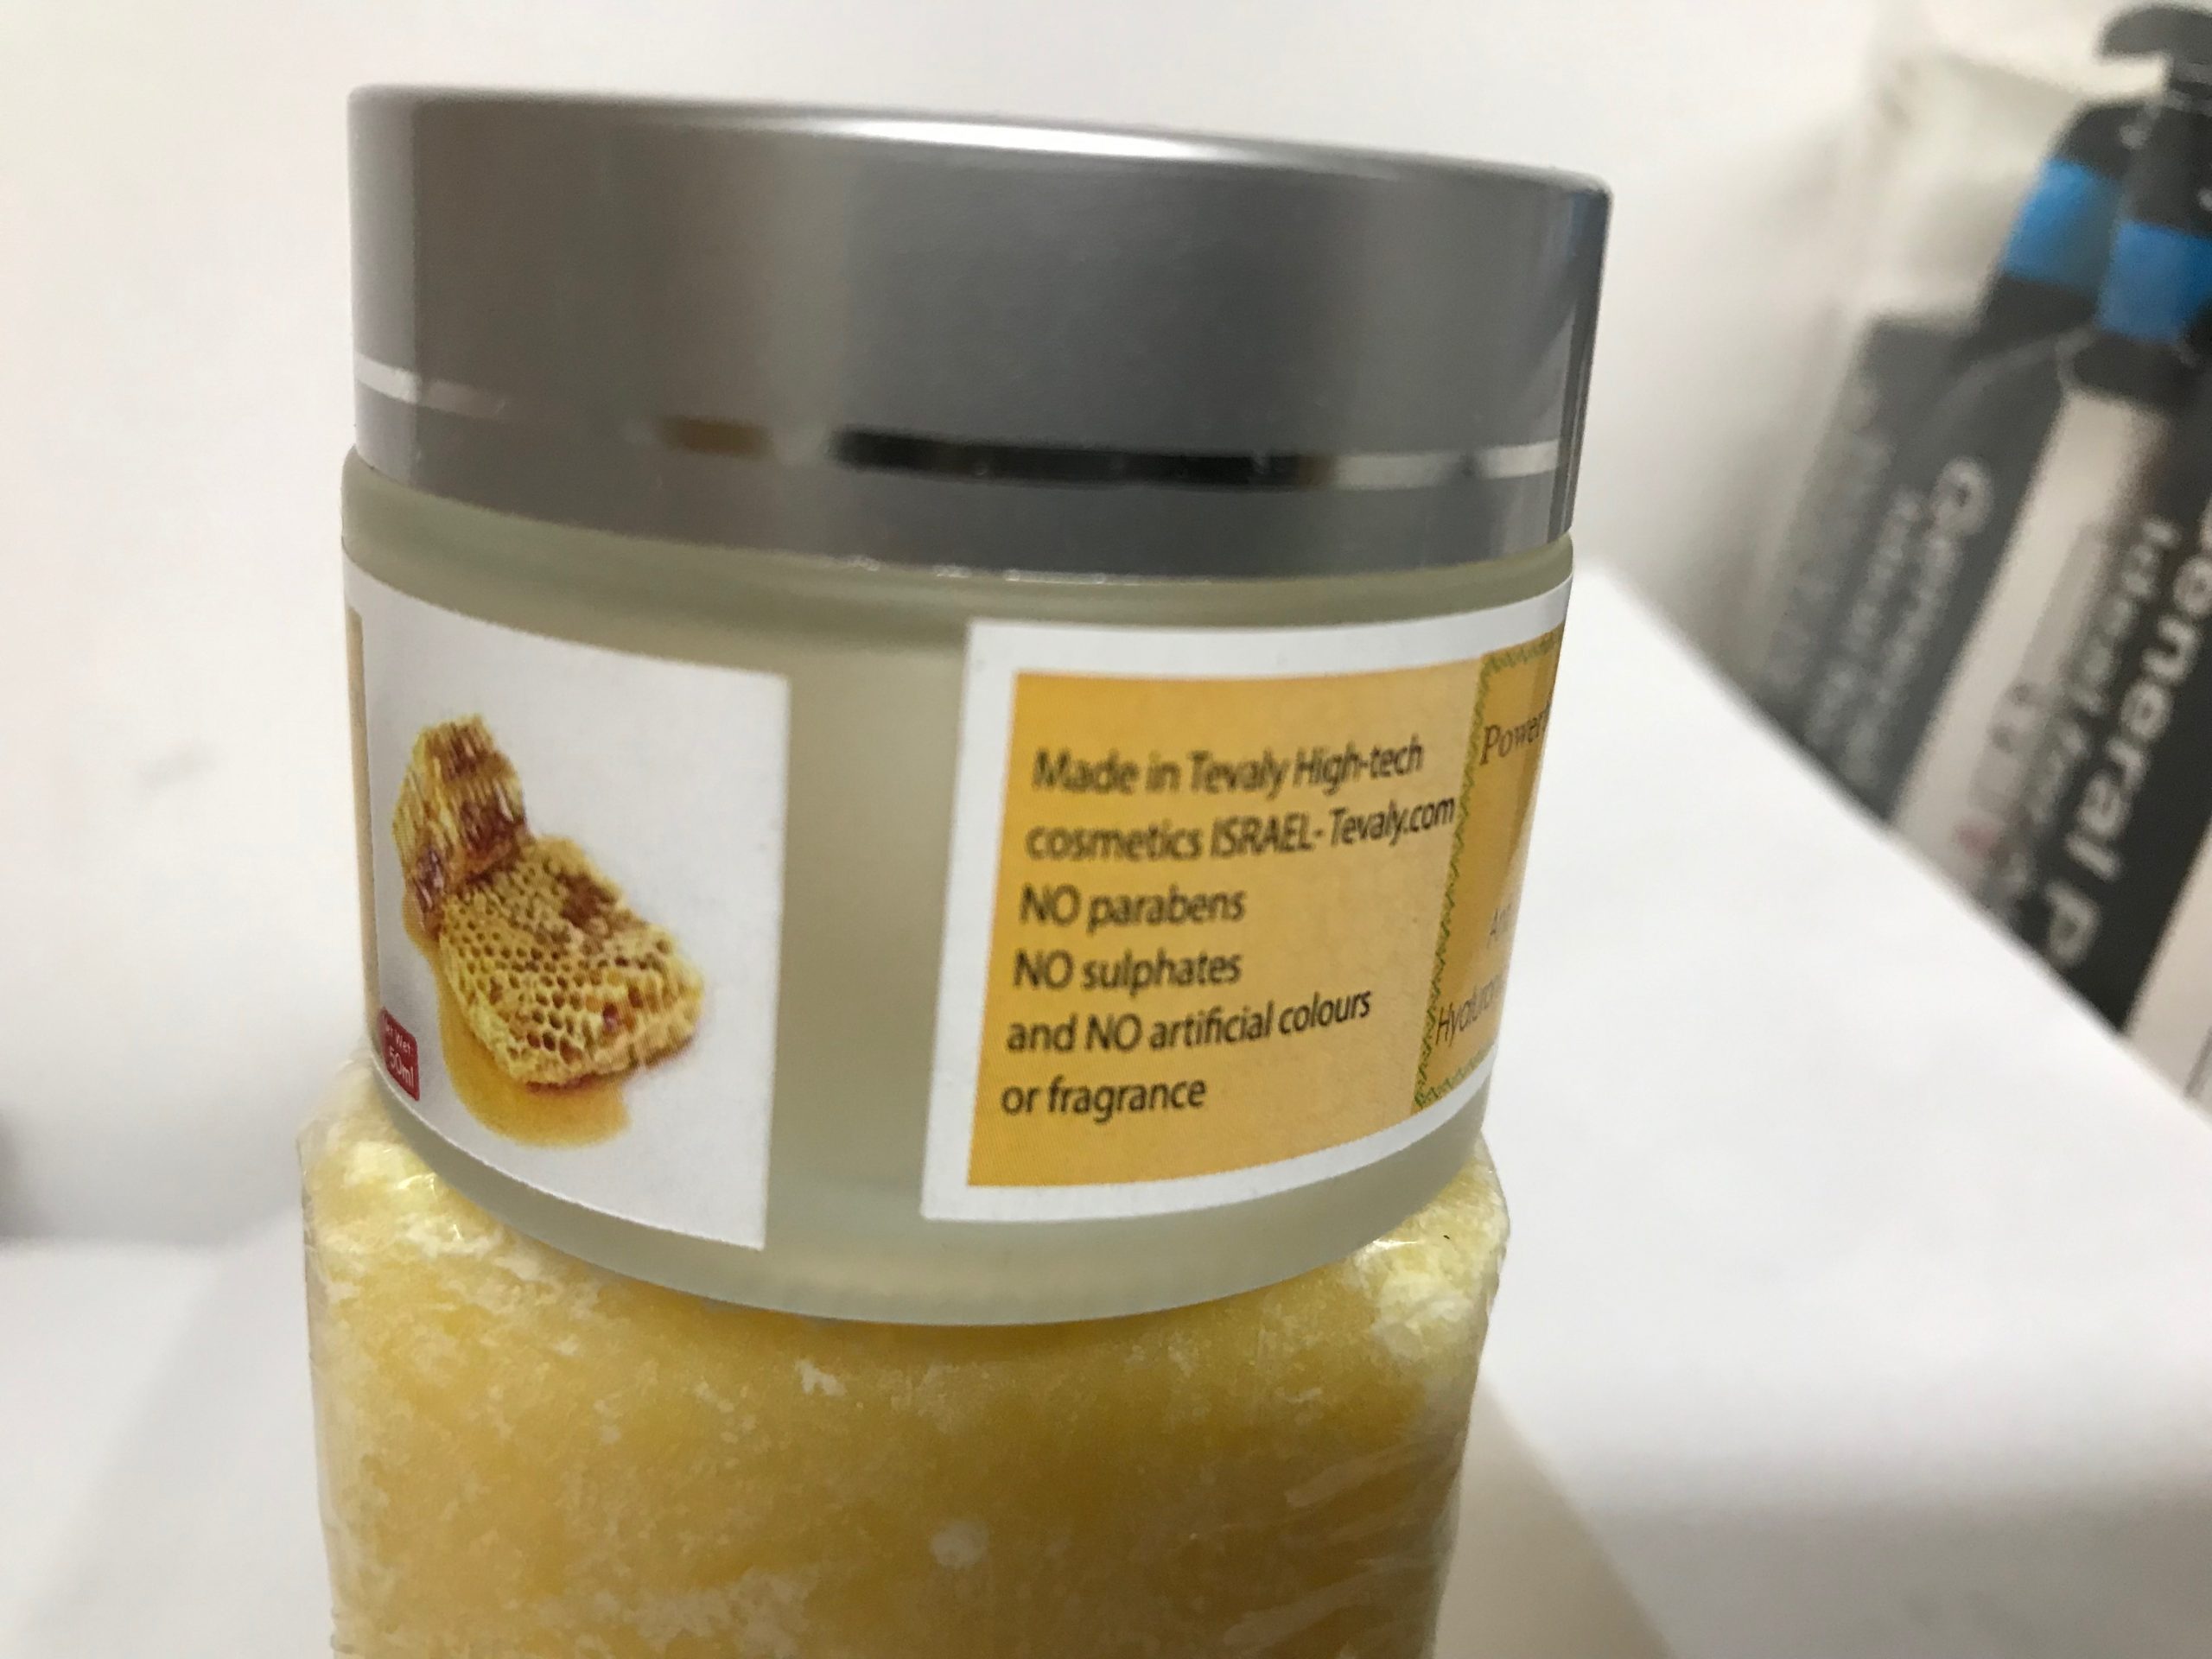 "פסוריאה" קרם וסבון טיפוליים - שעוות דבורים עם מולטי ויטמינים ושמנים-חדש